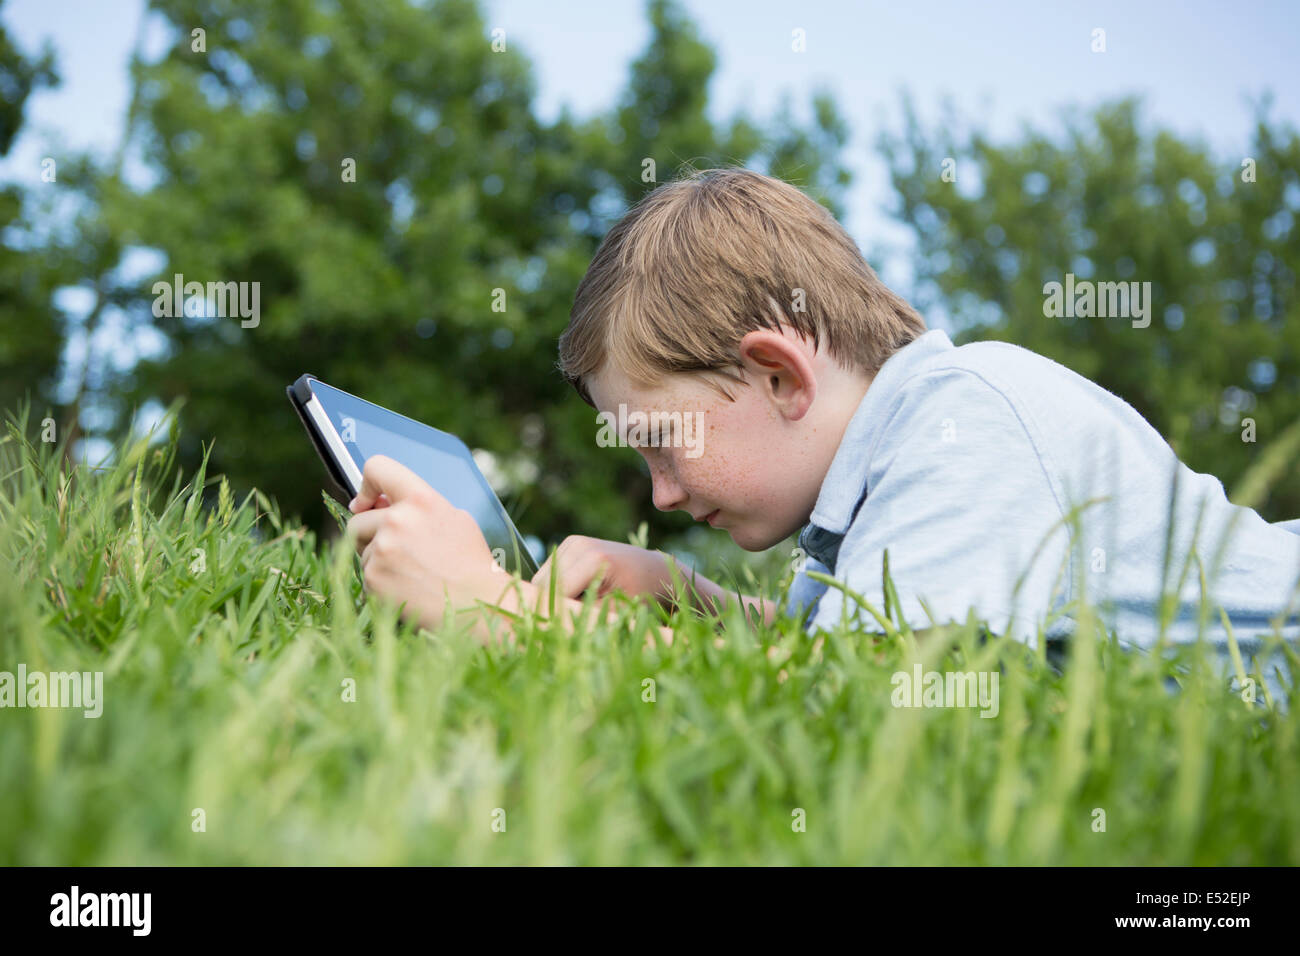 Un jeune garçon couché dans l'herbe, à l'aide d'une tablette numérique. Banque D'Images